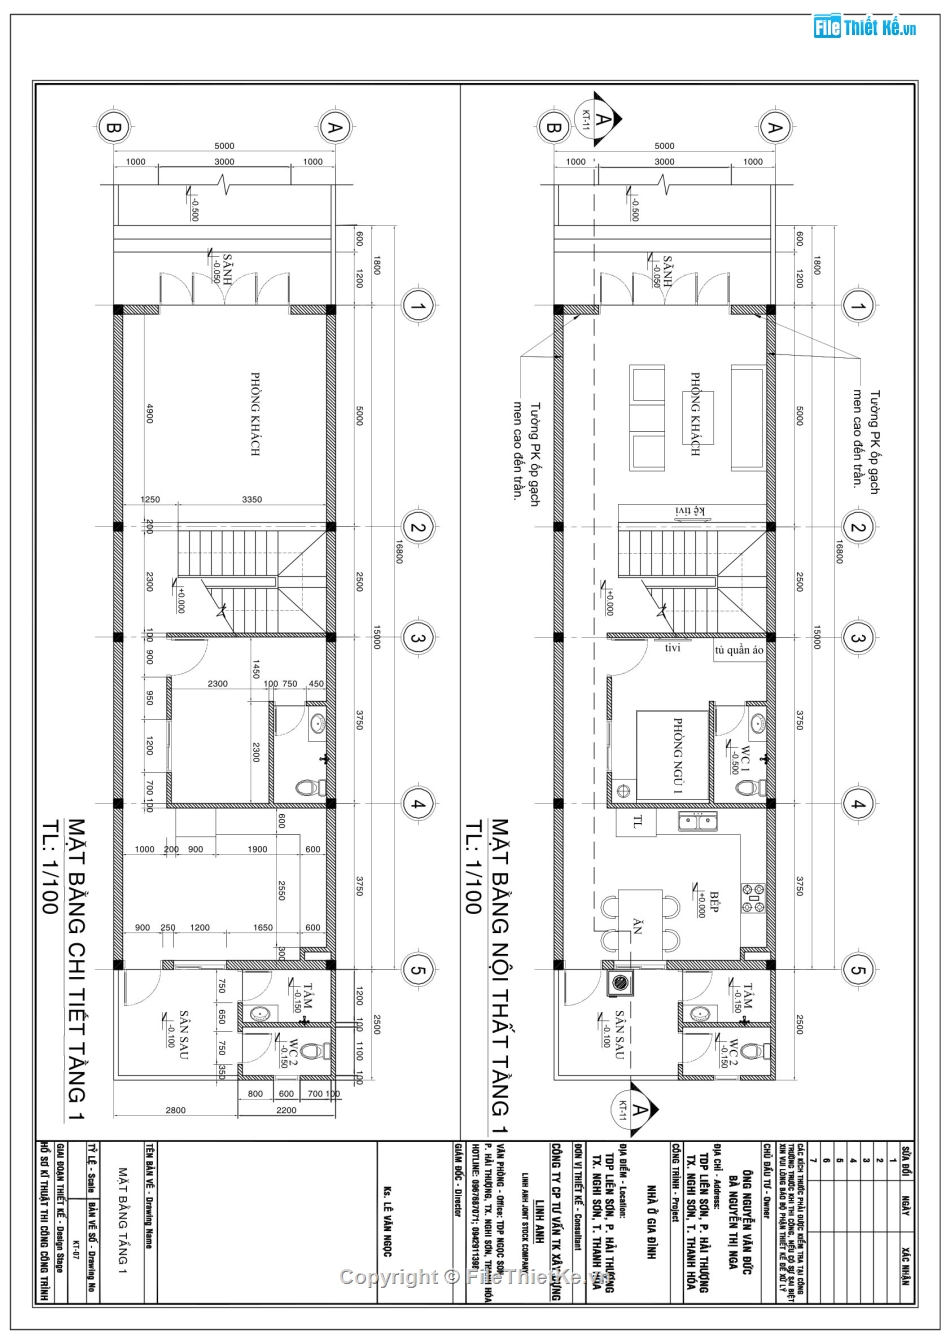 nhà phố 2 tầng 5x16.2m,hồ sơ bản vẽ nhà 2 tầng,autocad nhà phố 2 tầng,thiết kế nhà phố 2 tầng,sketchup nhà phố 2 tầng